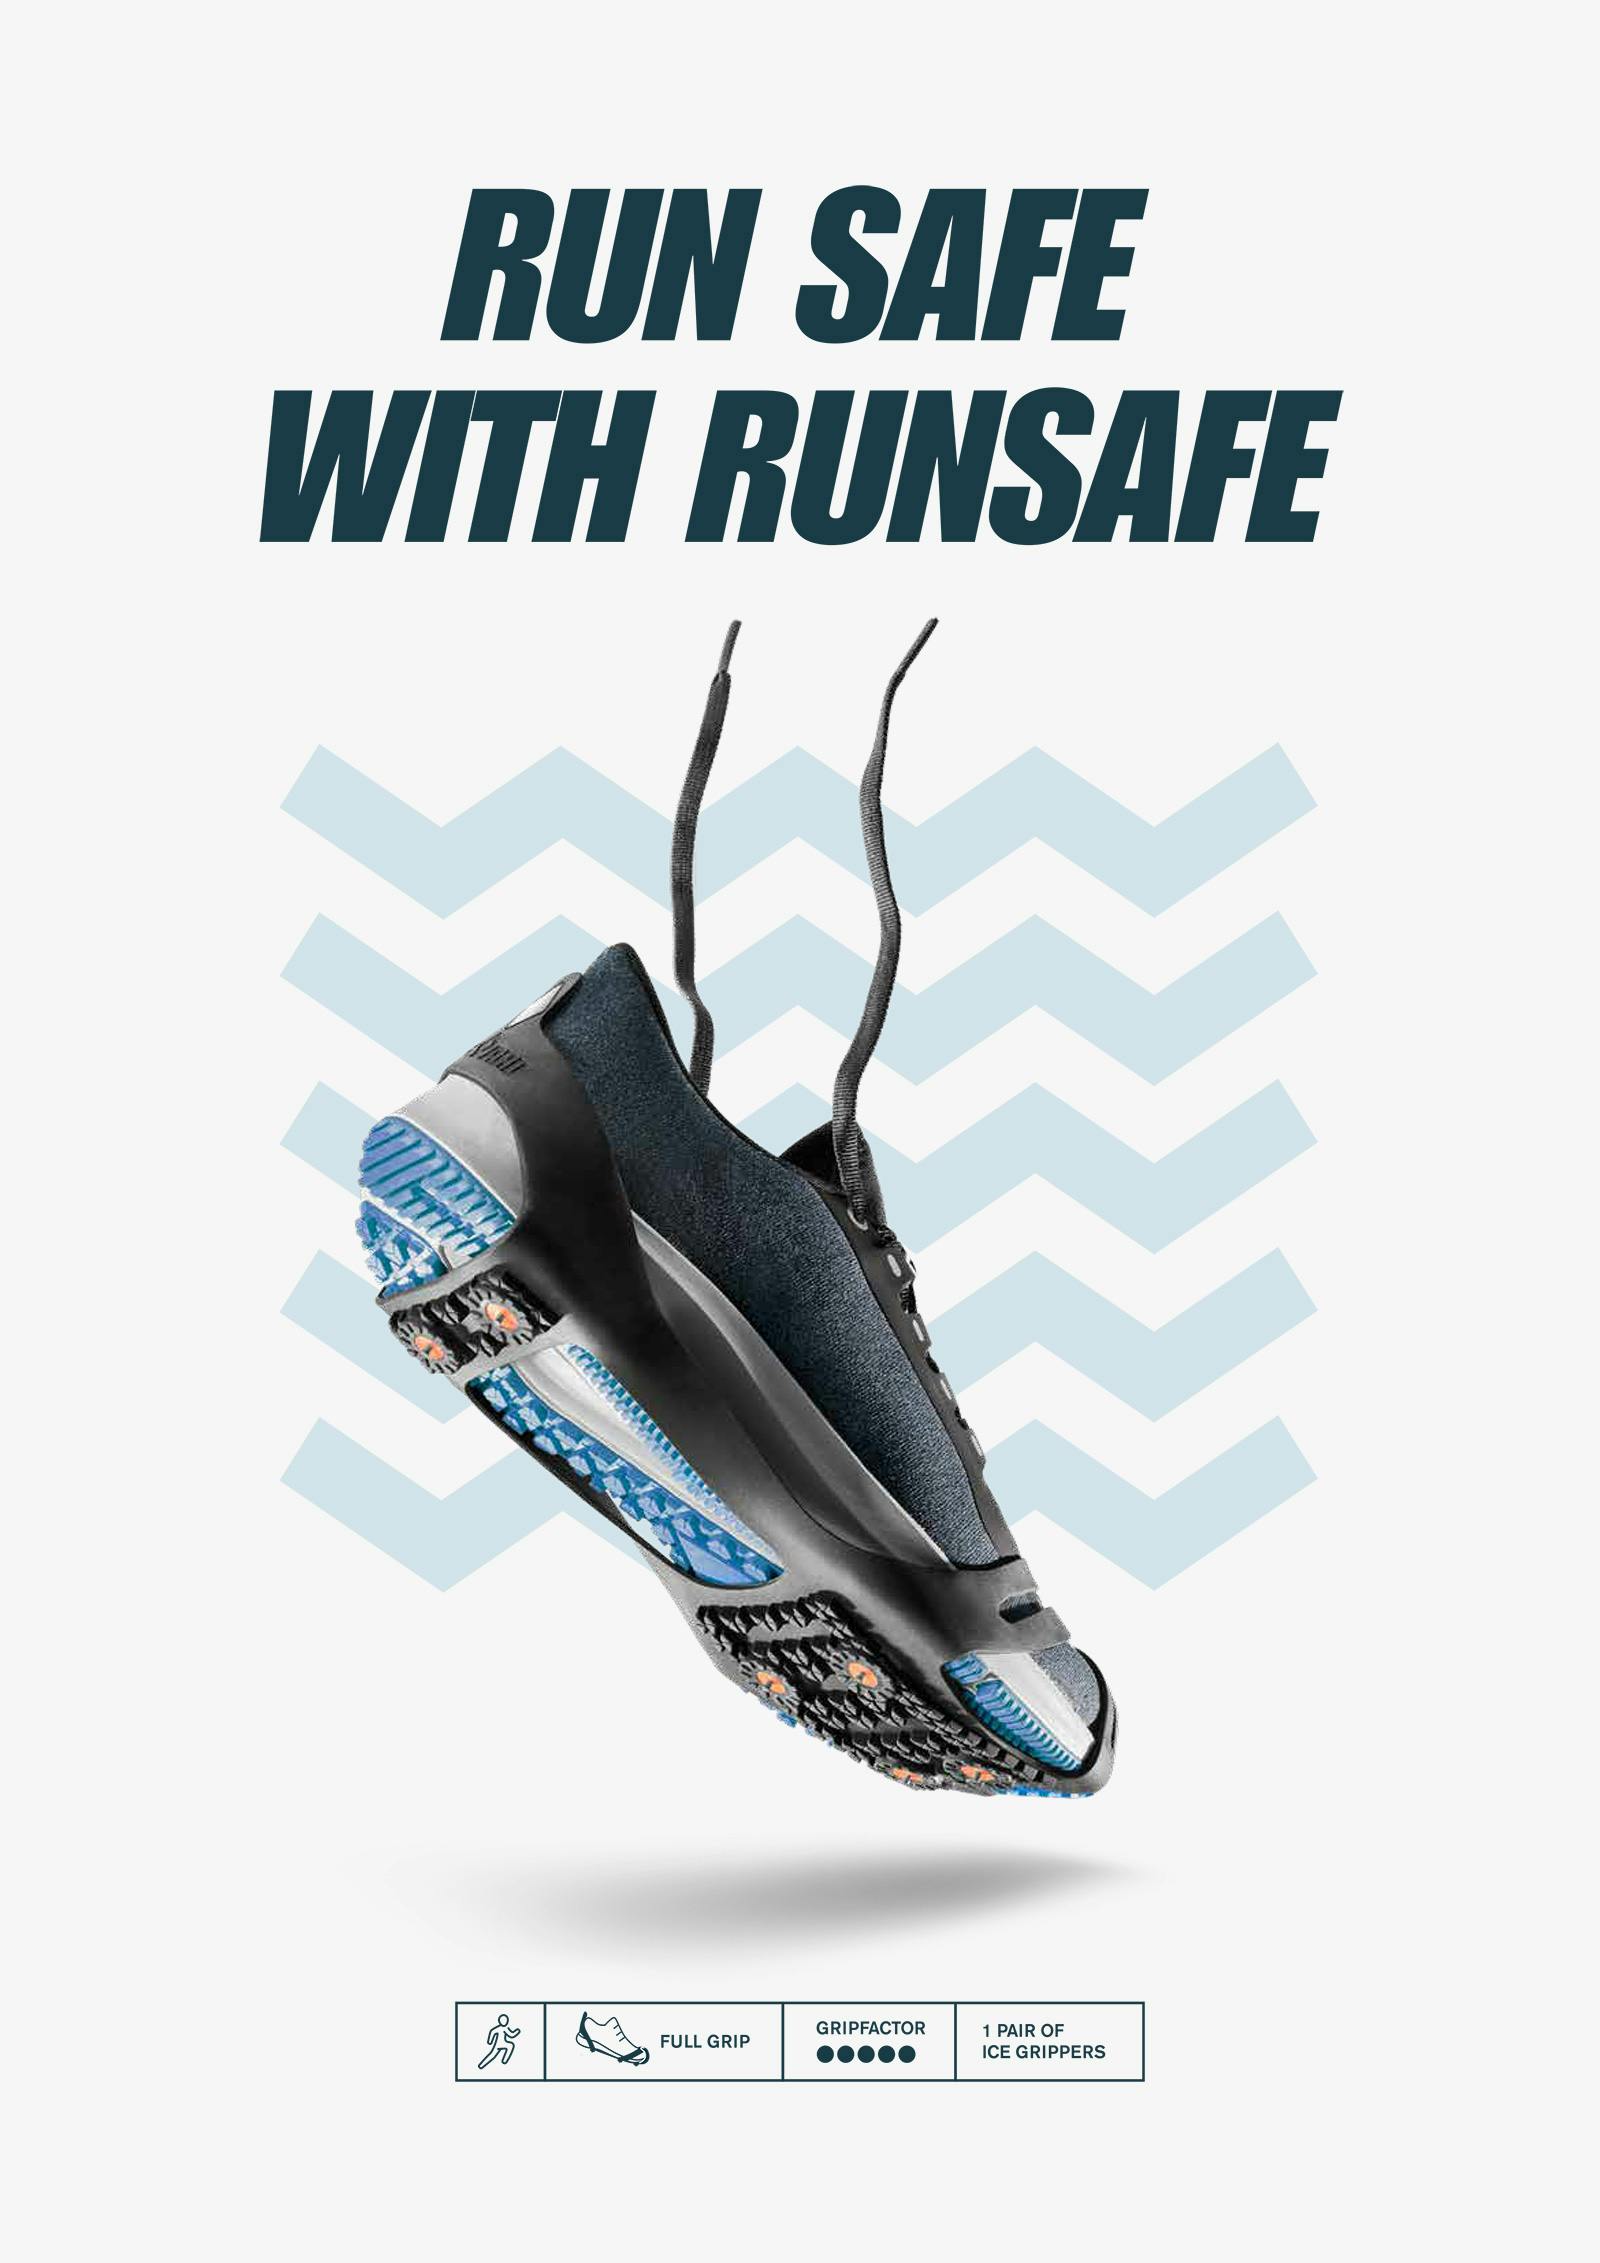 Träningssko med halkskydd monterat, grafik runtomkring och texten "Run safe with Runsafe"